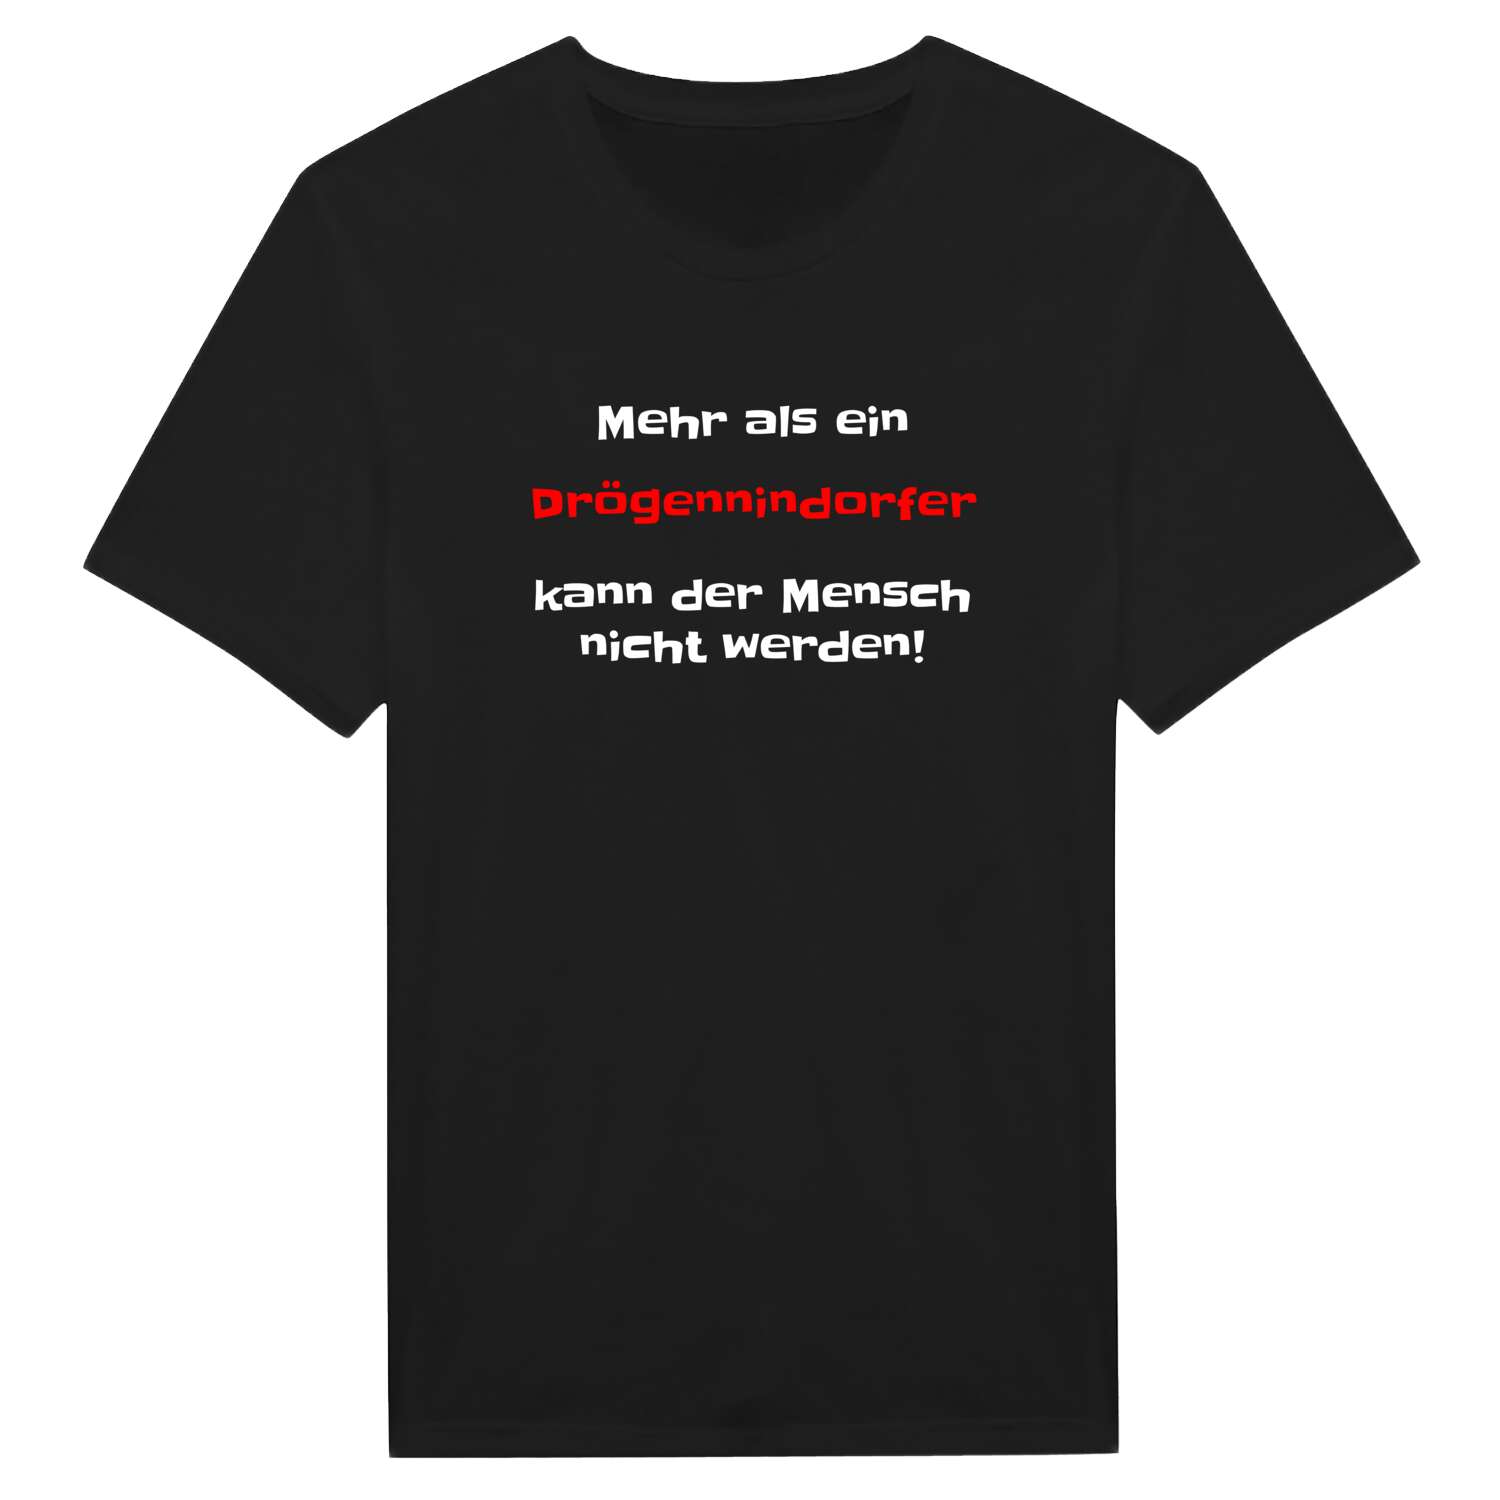 Drögennindorf T-Shirt »Mehr als ein«